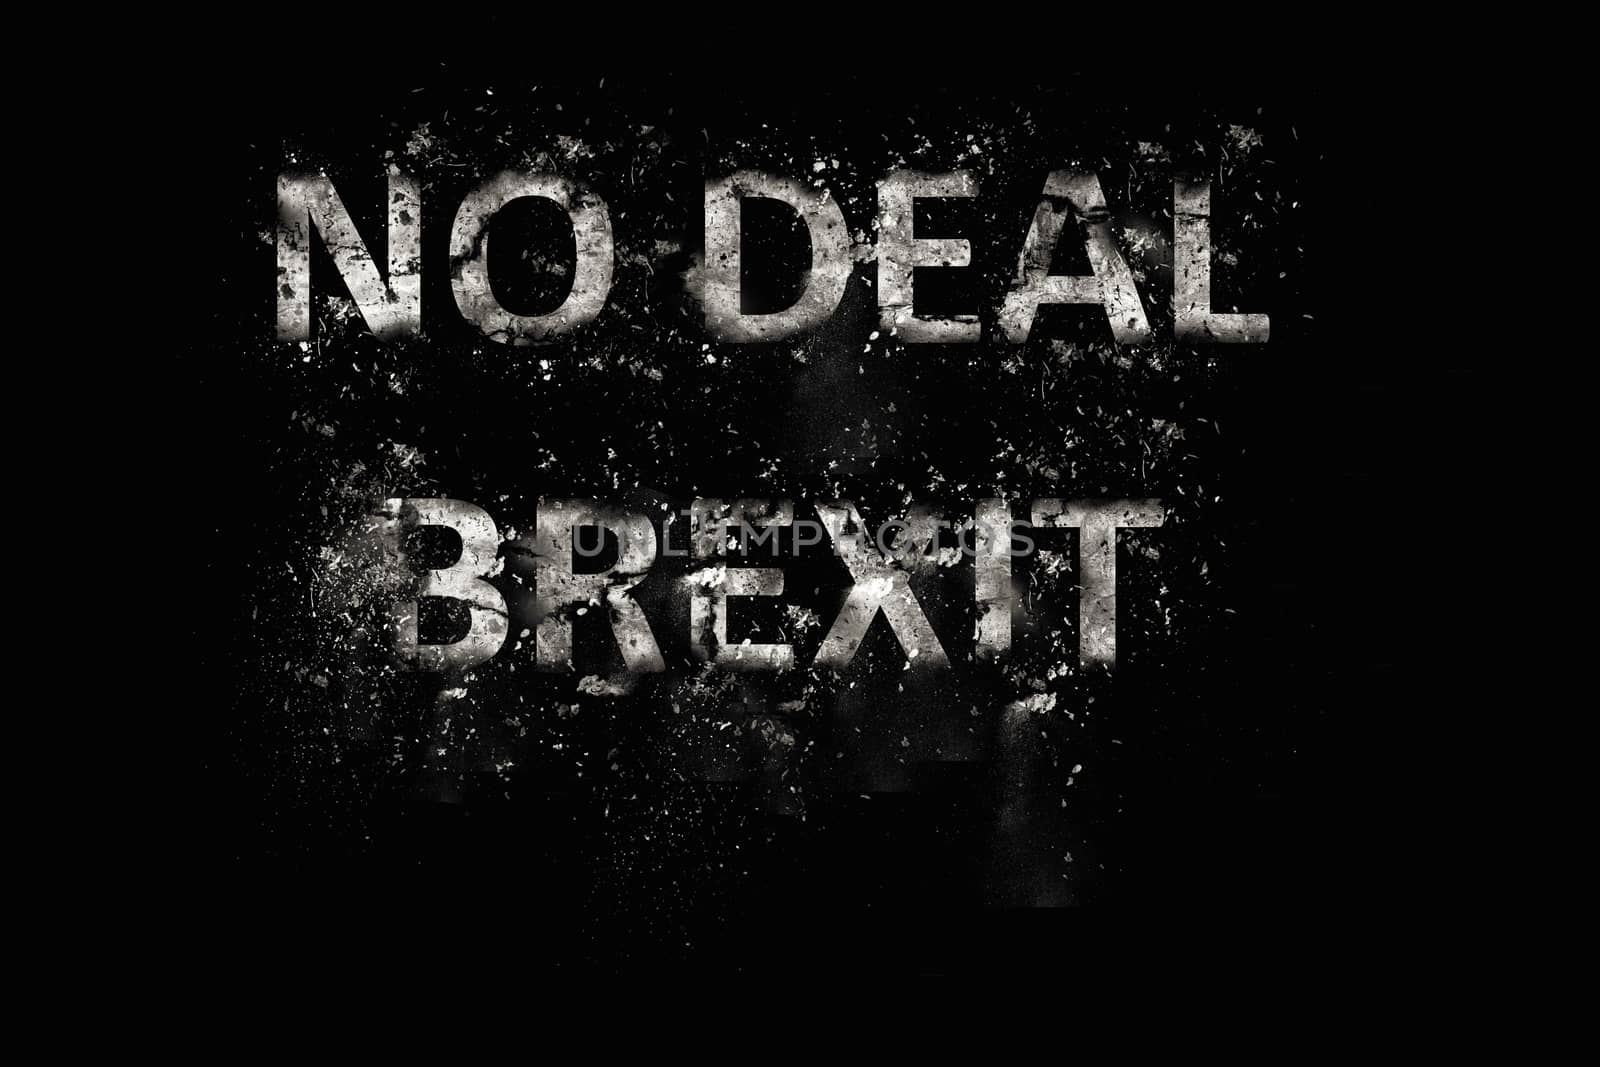 Exploding No Deal Brexit Text